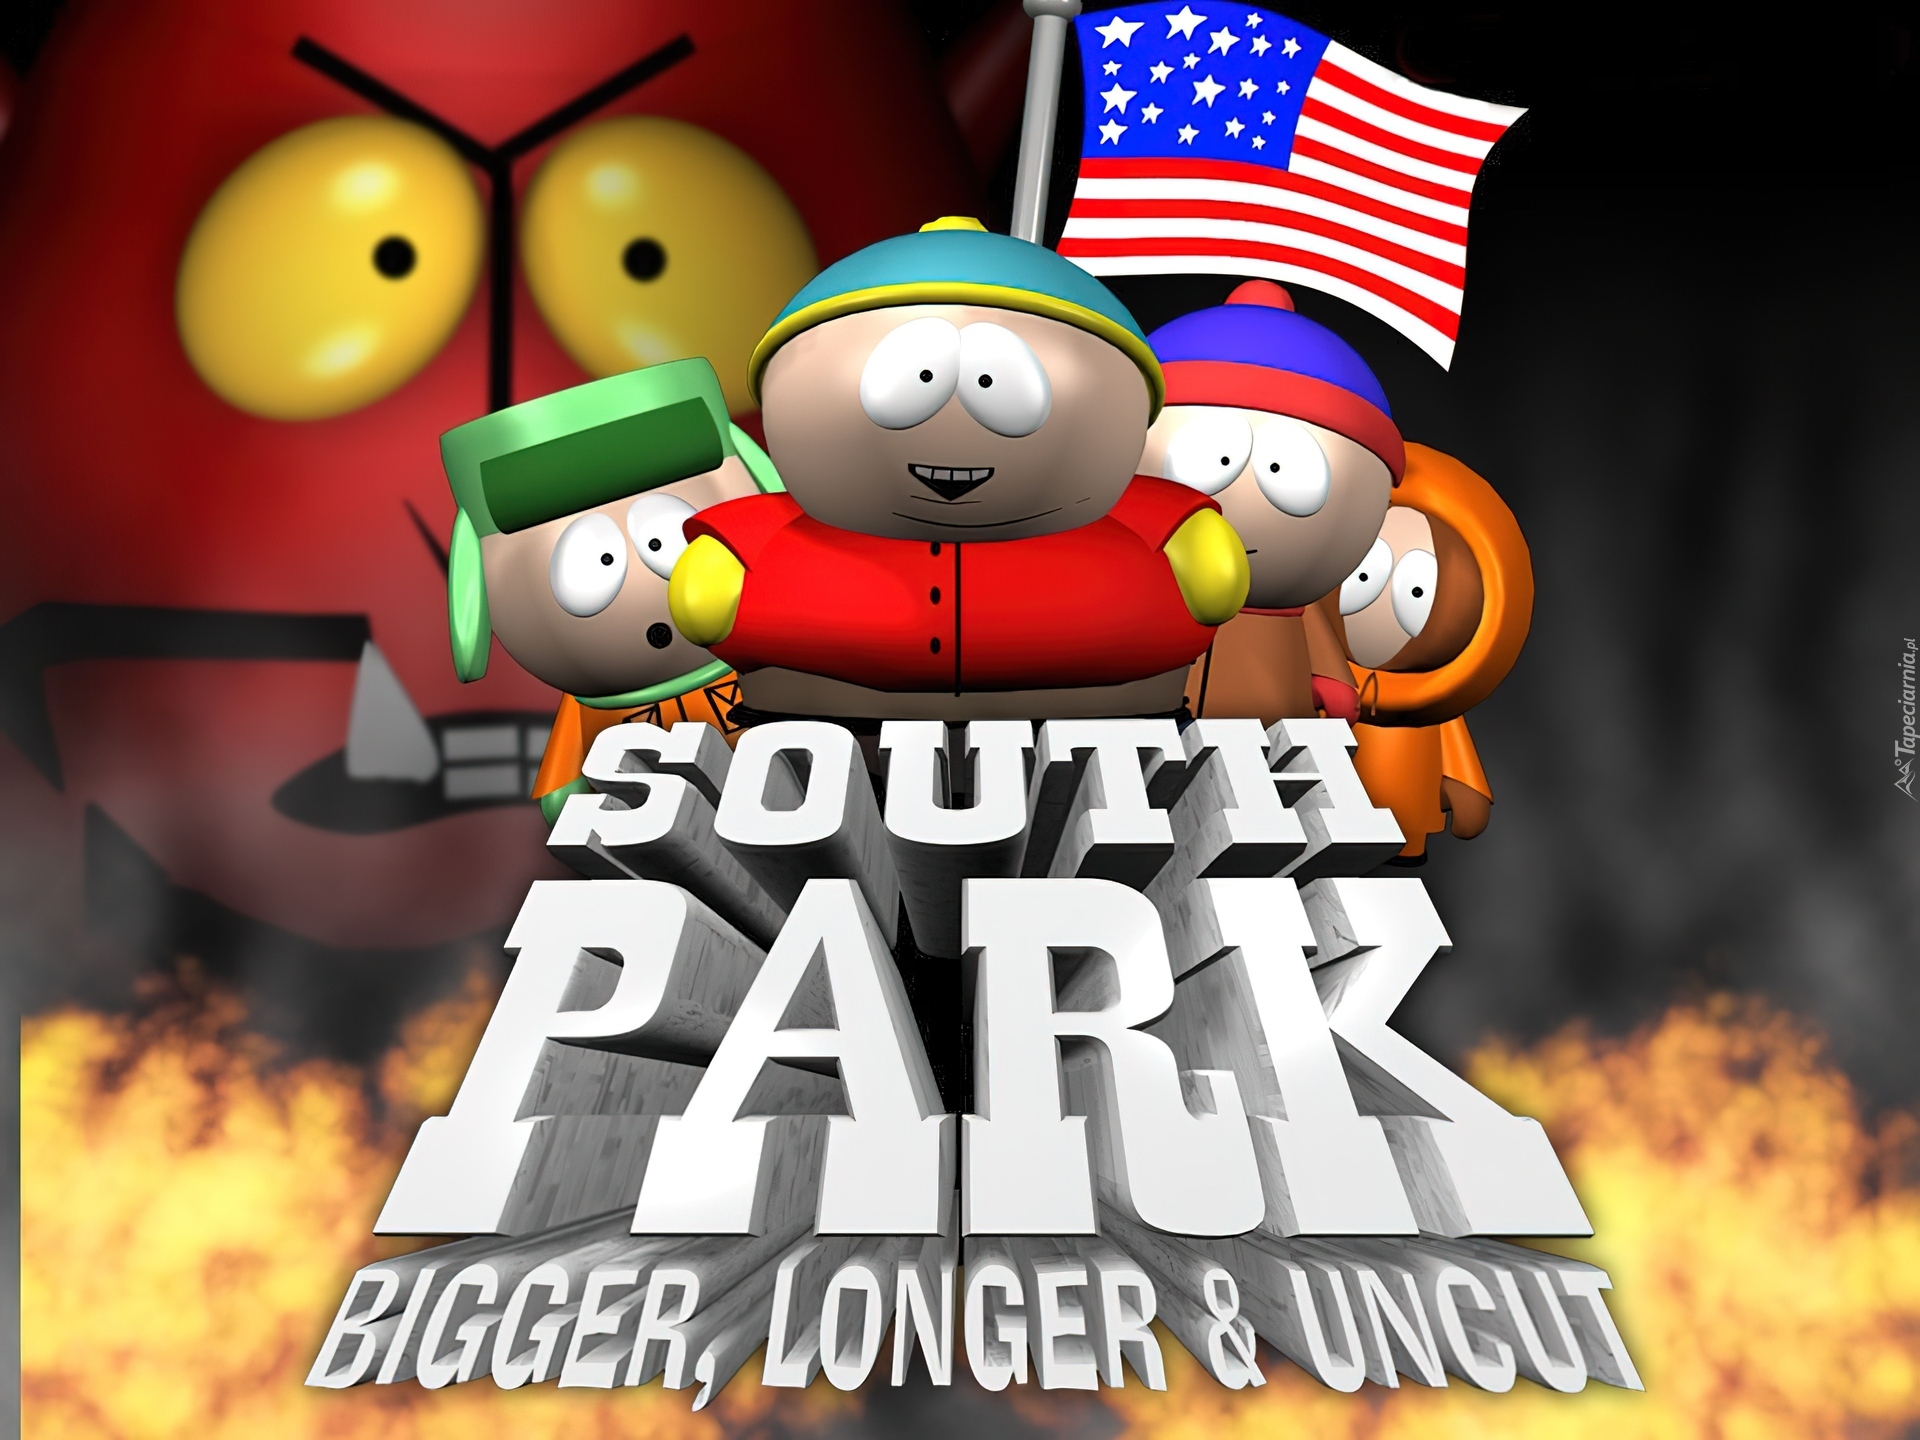 Miasteczko South Park, bohaterowie, flaga